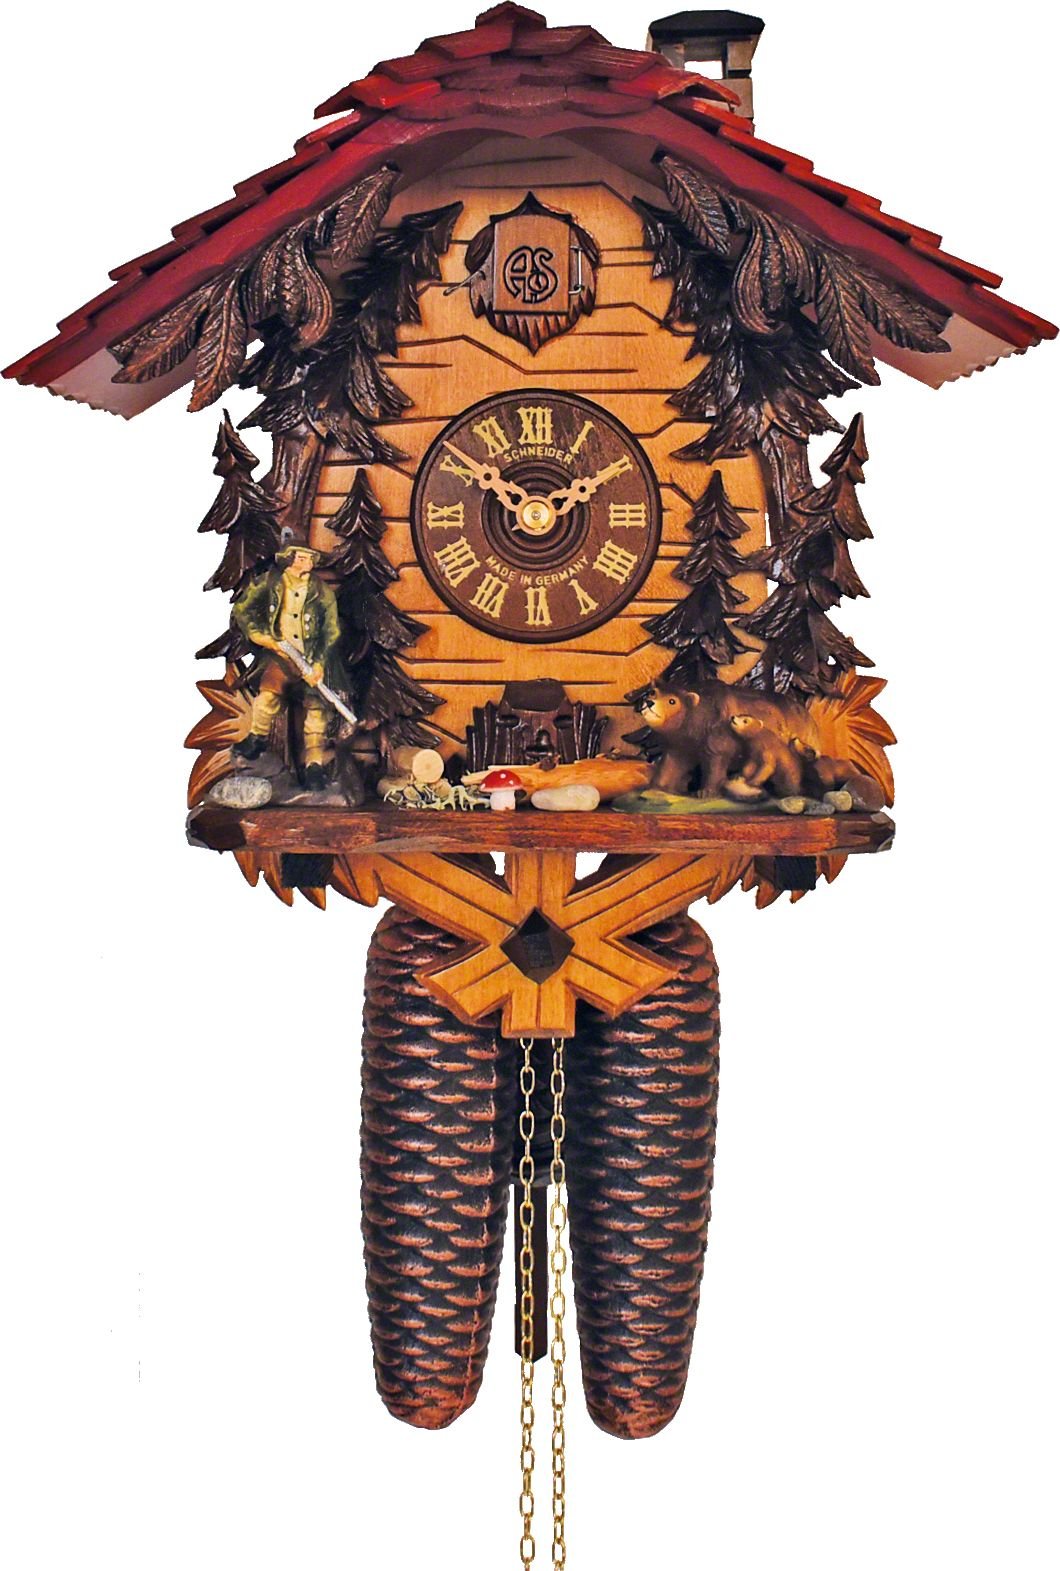 Cuckoo Clock Chalet Style 8 Day Movement 29cm by Anton Schneider